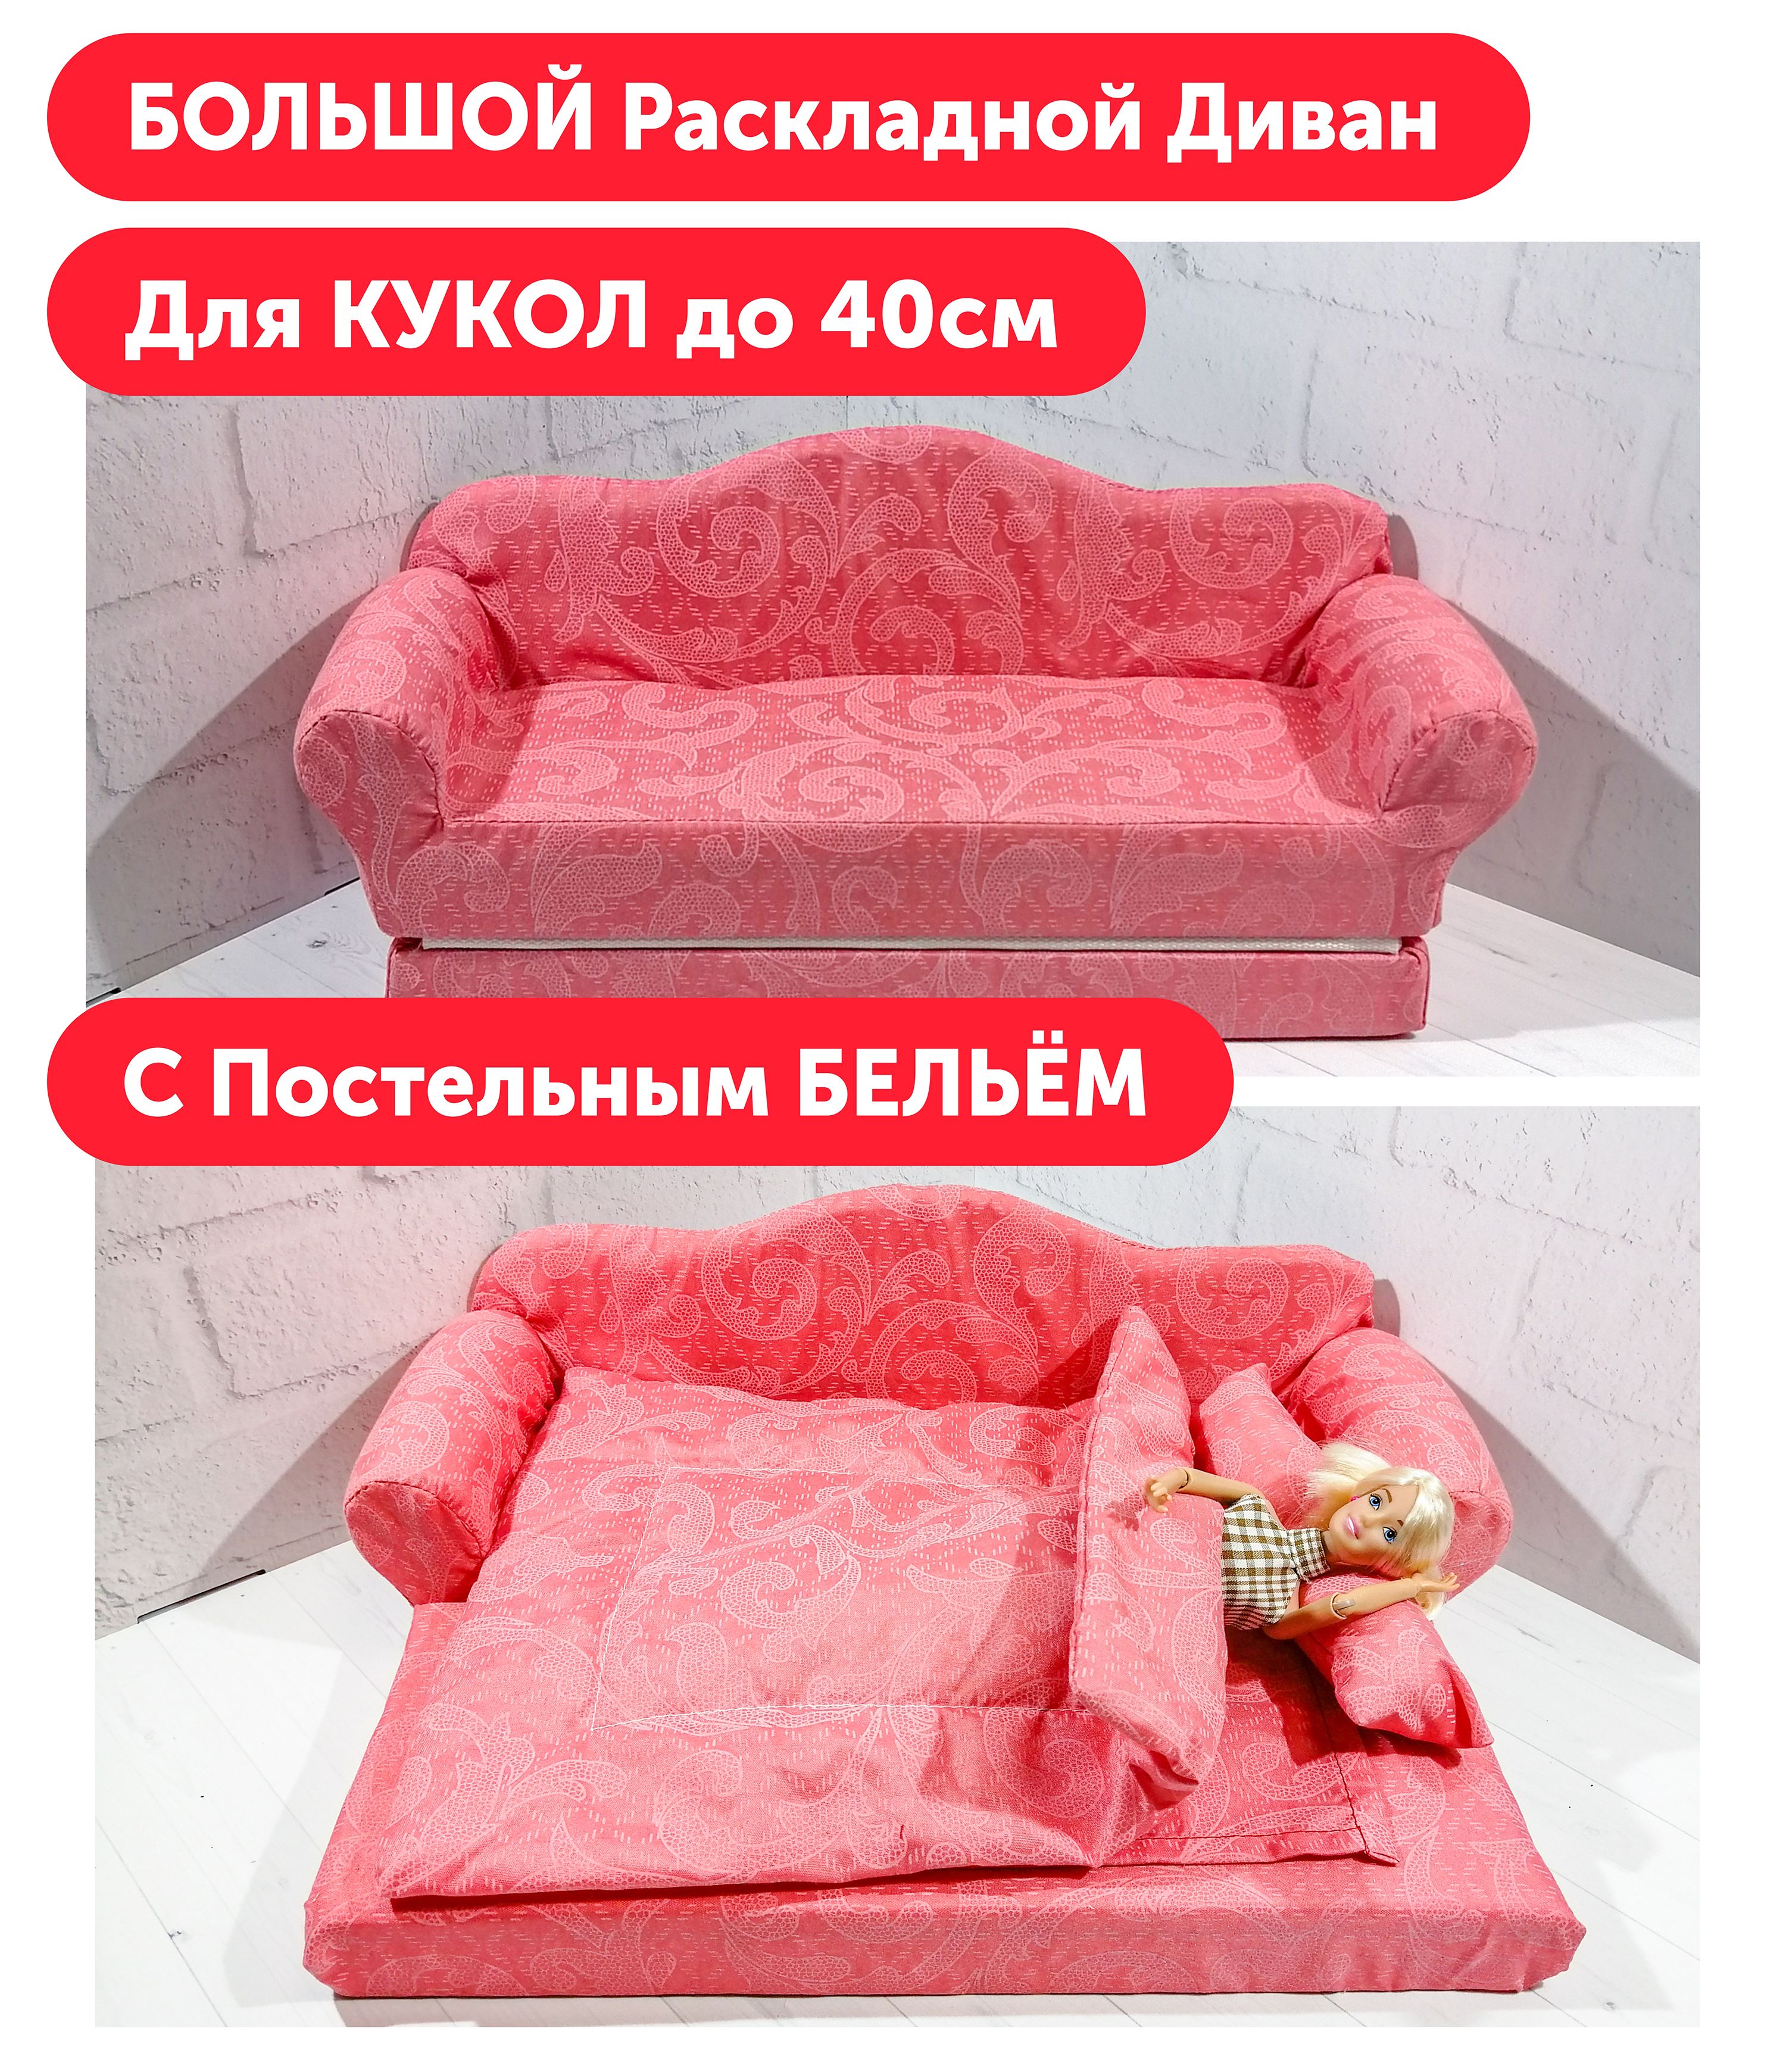 Как сделать кукольную мебель - диван-кровать.